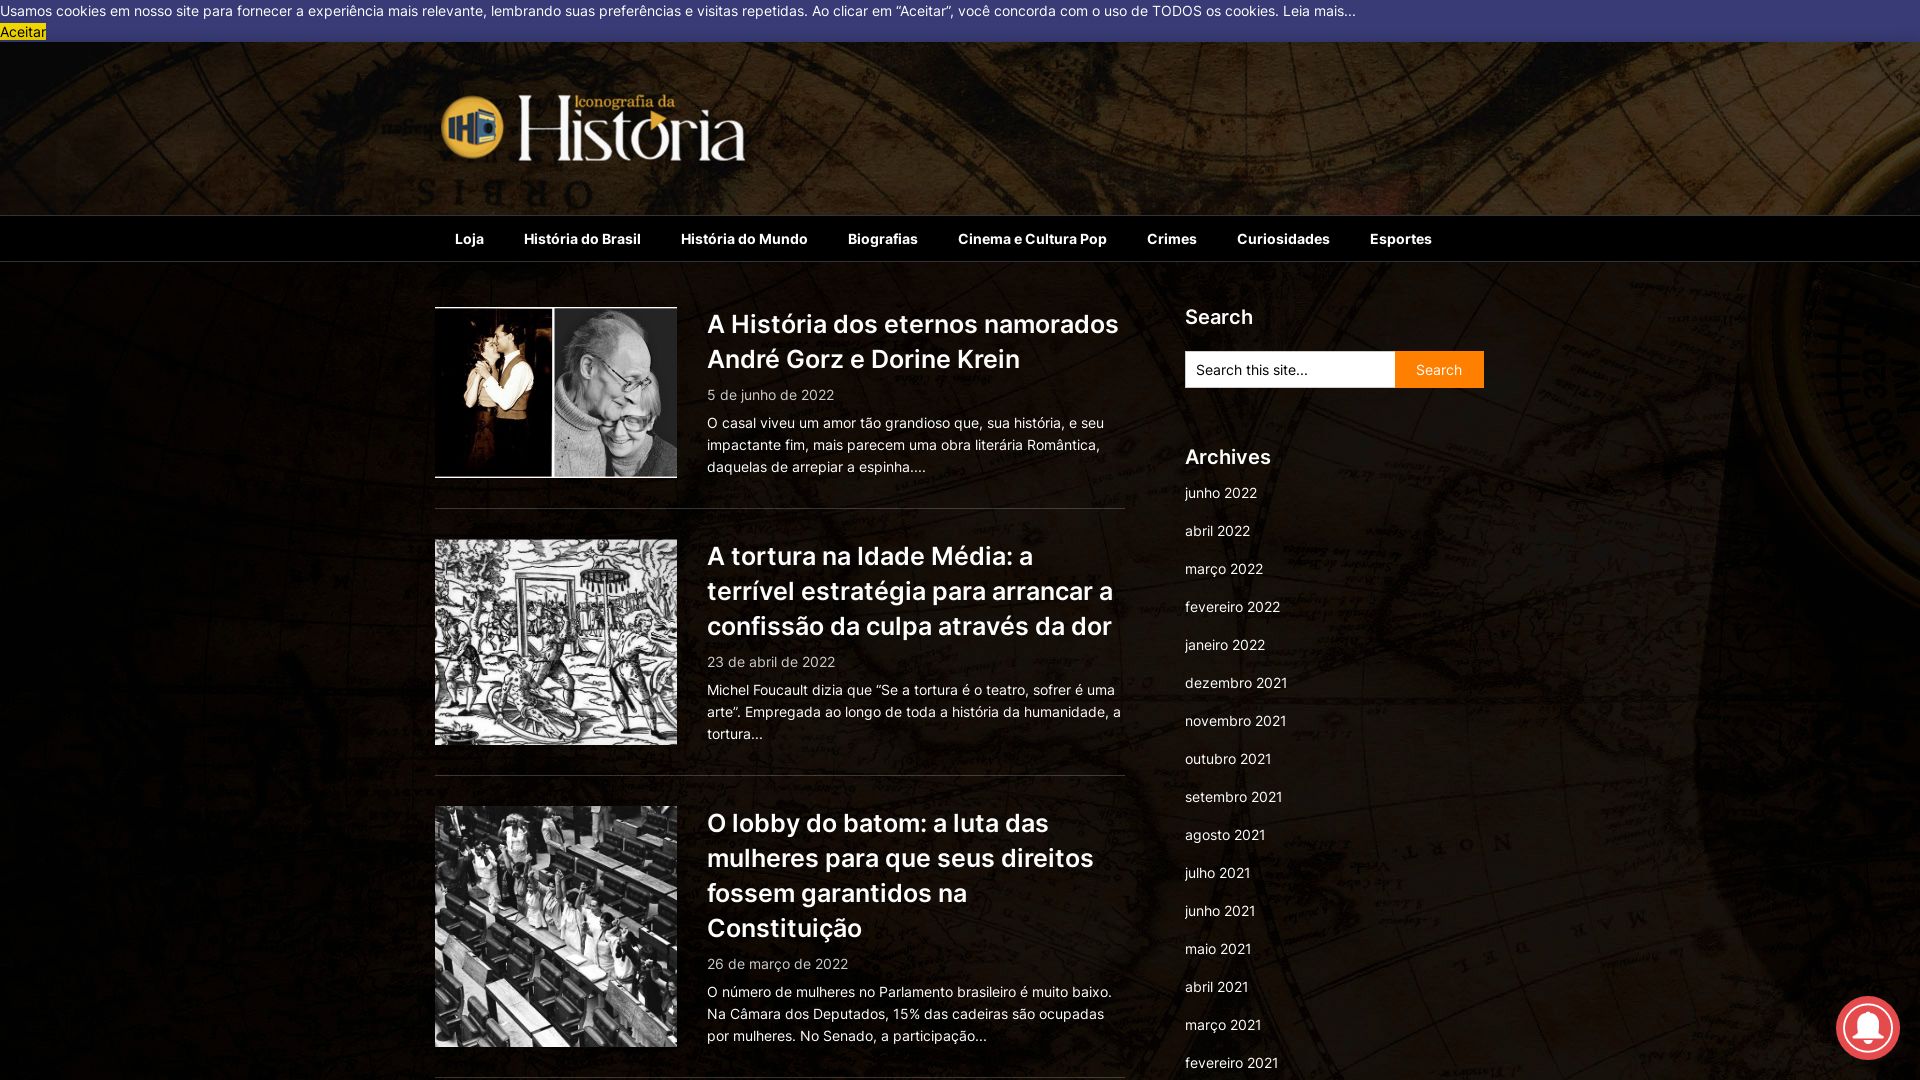 Status do site iconografiadahistoria.com.br está   ONLINE